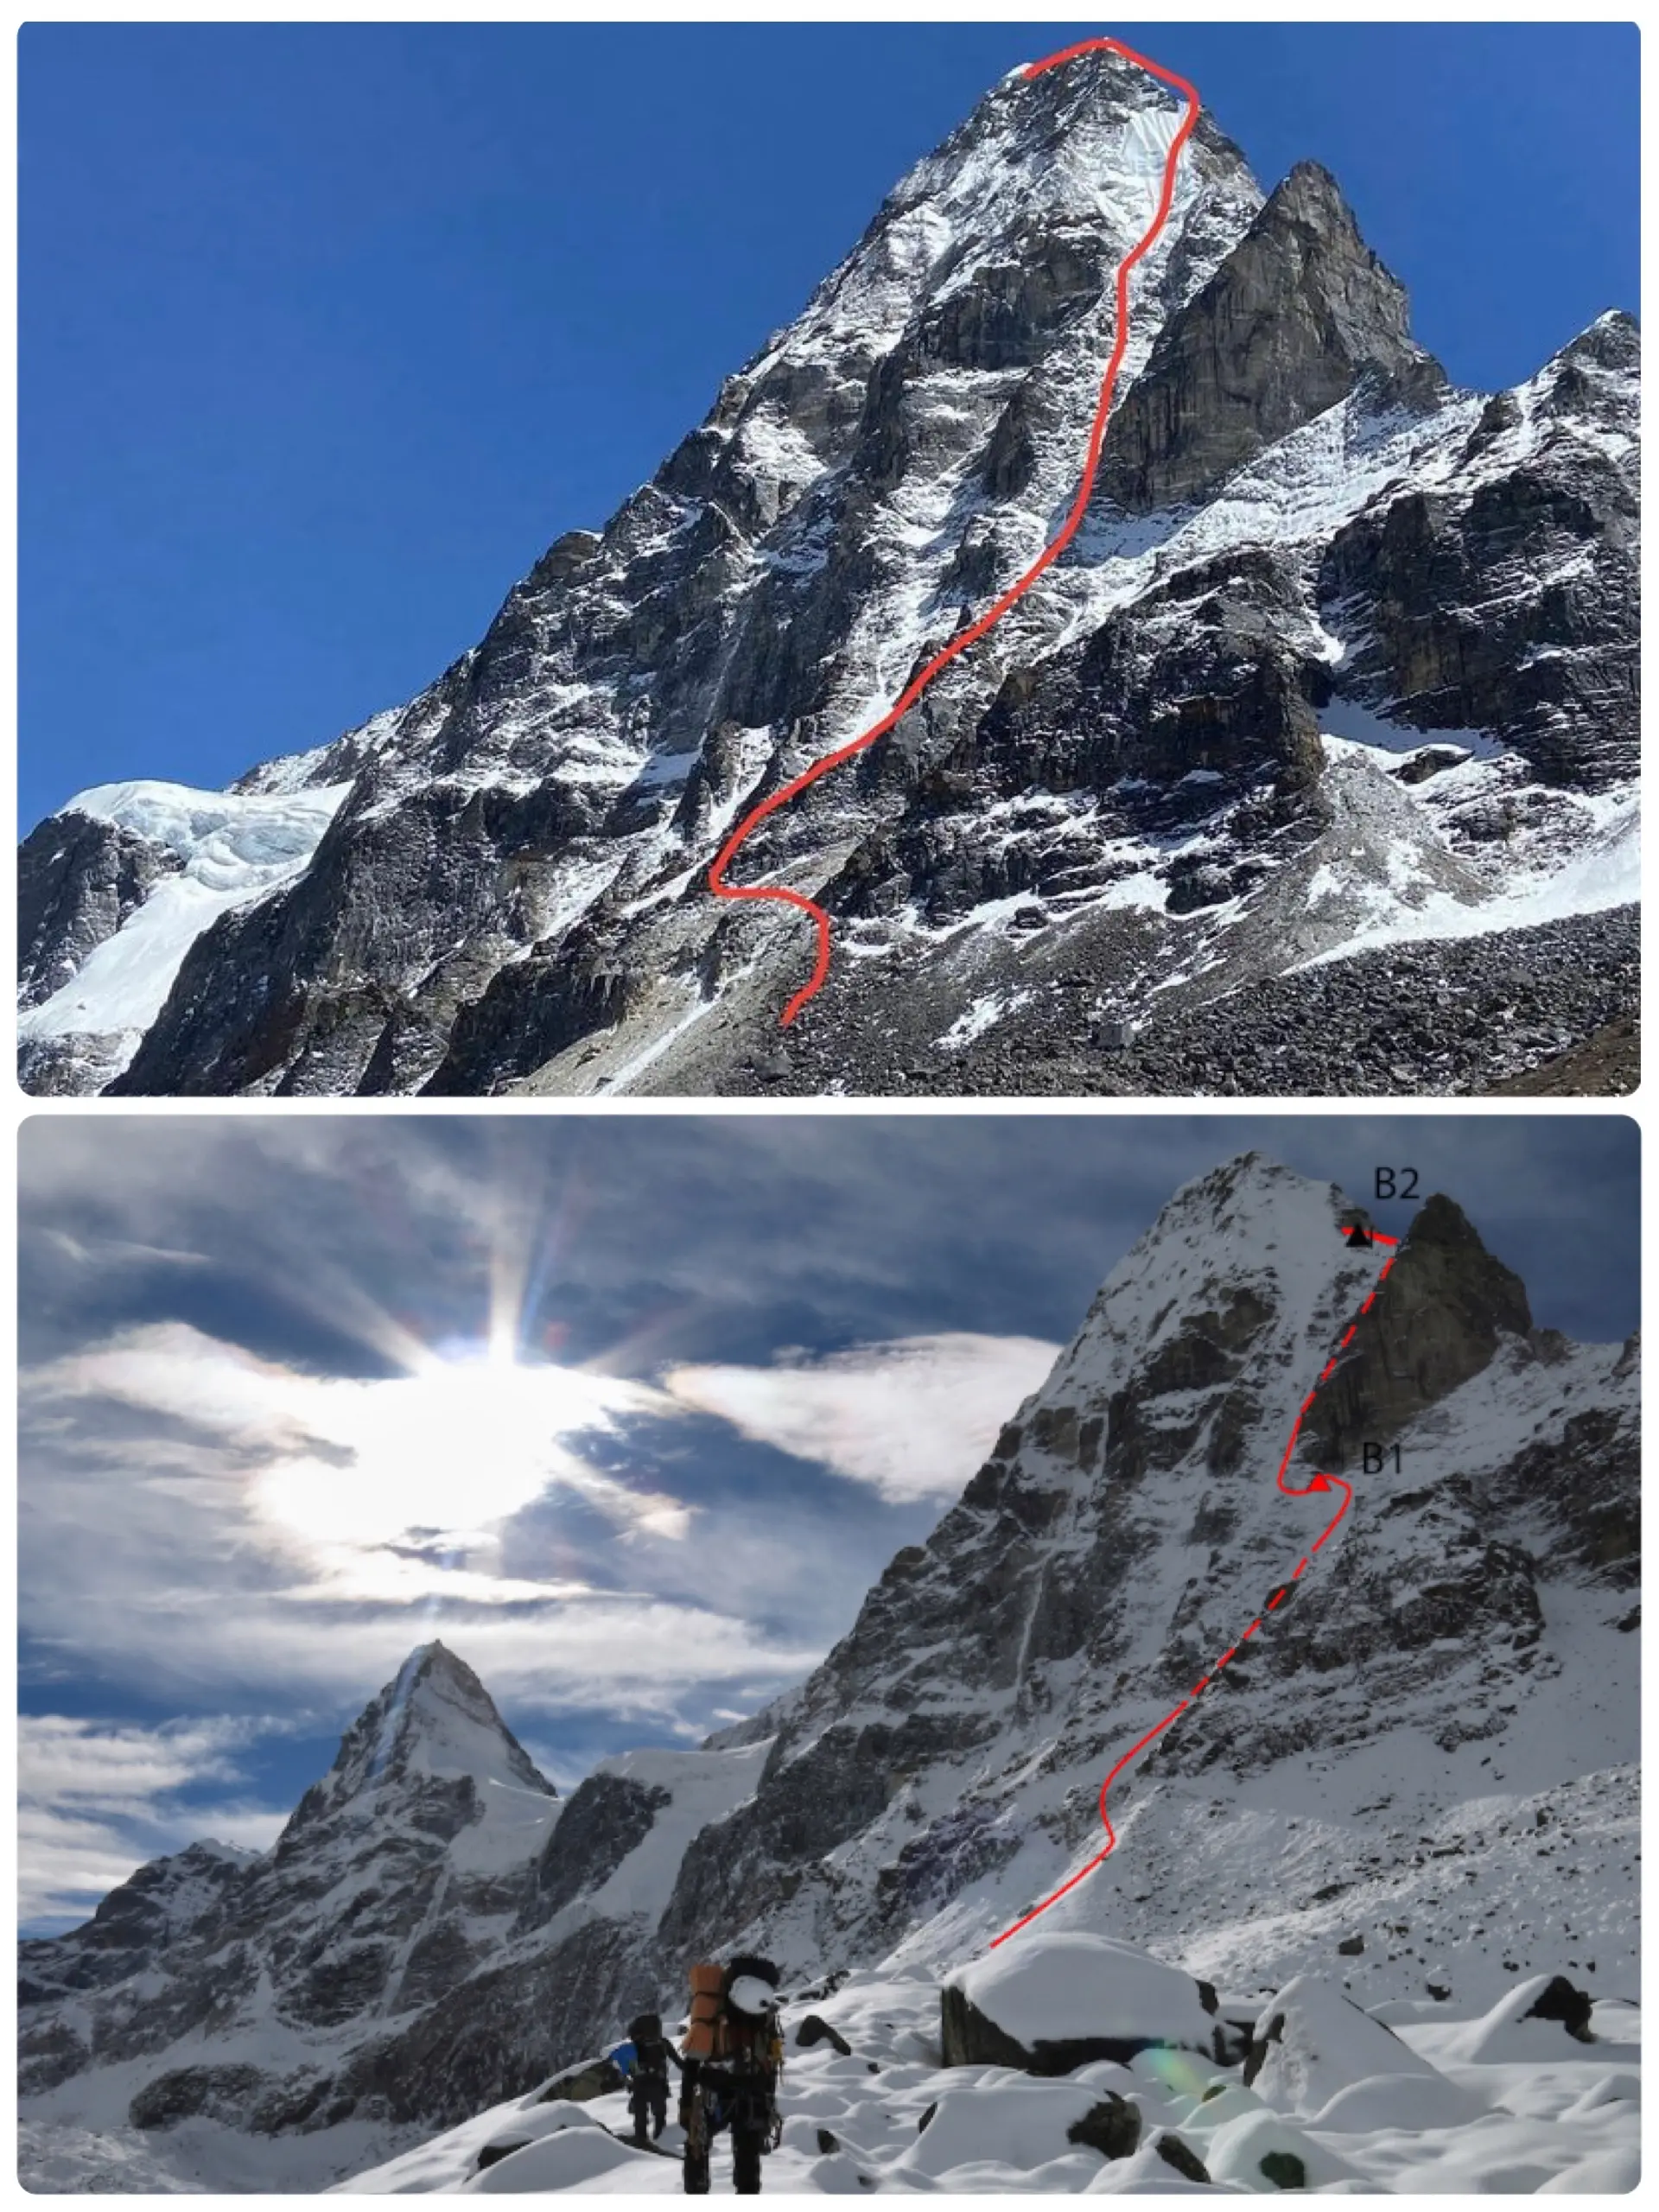 Вверху - японский маршрут 2022 года. Внизу - незаконченный маршрут чешской команды 2014 года. Северная стена Кангчунг Нуп (Kangchung Nup) высотой 6090 метров в Непале